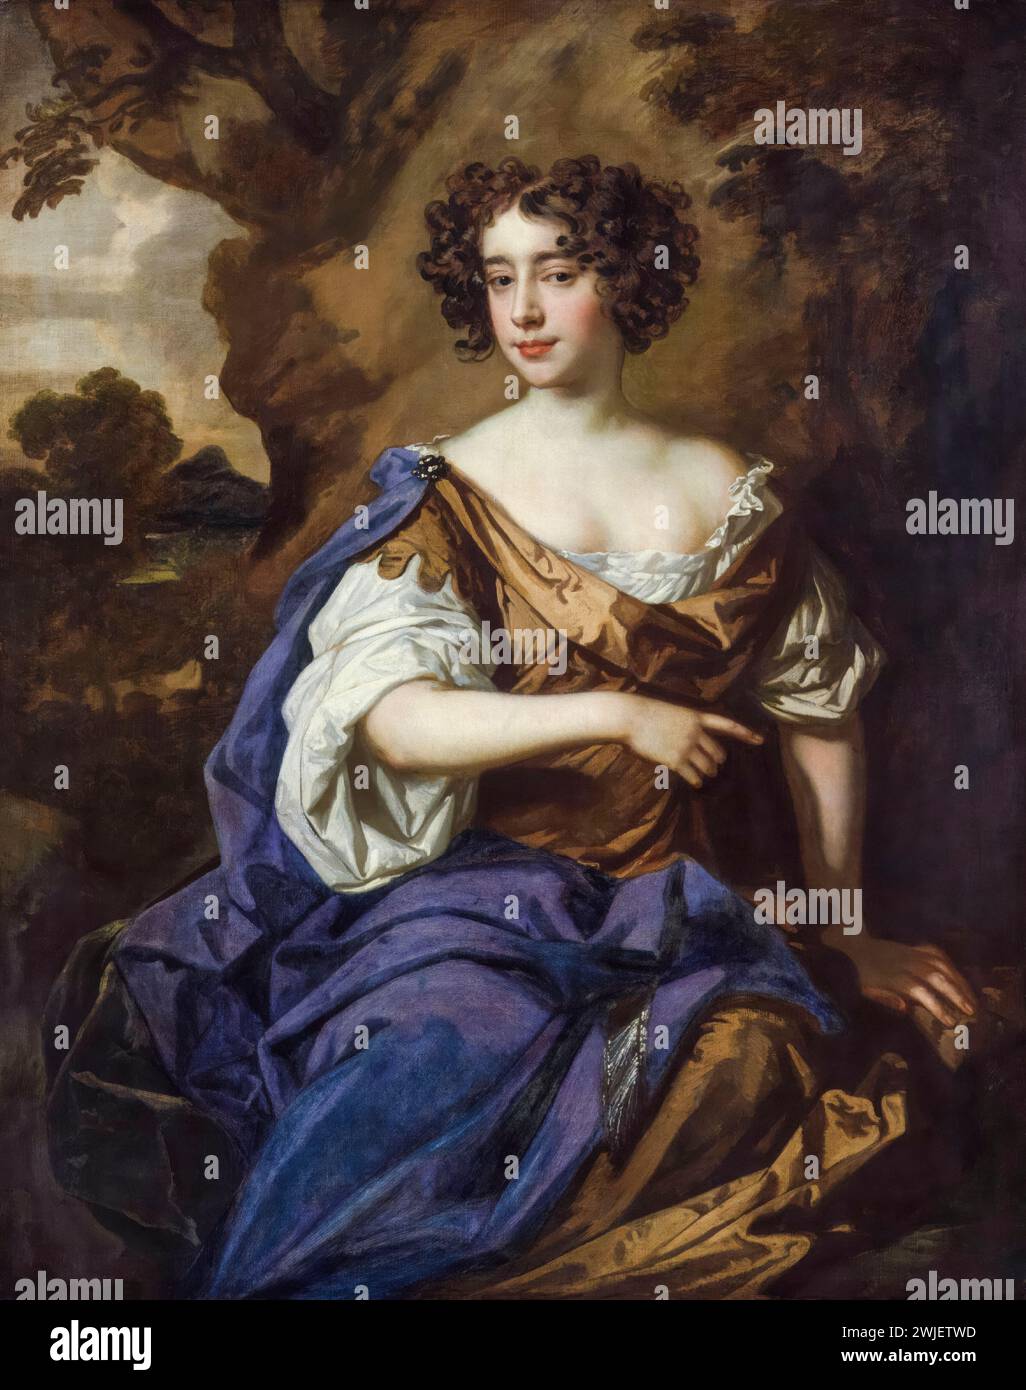 Catherine Sedley (1657-1717), condesa de Dorchester, cortesana inglesa y amante del rey Jacobo II de Inglaterra, pintura de retrato en óleo sobre lienzo por el taller de Sir Peter Lely, circa 1675 Foto de stock